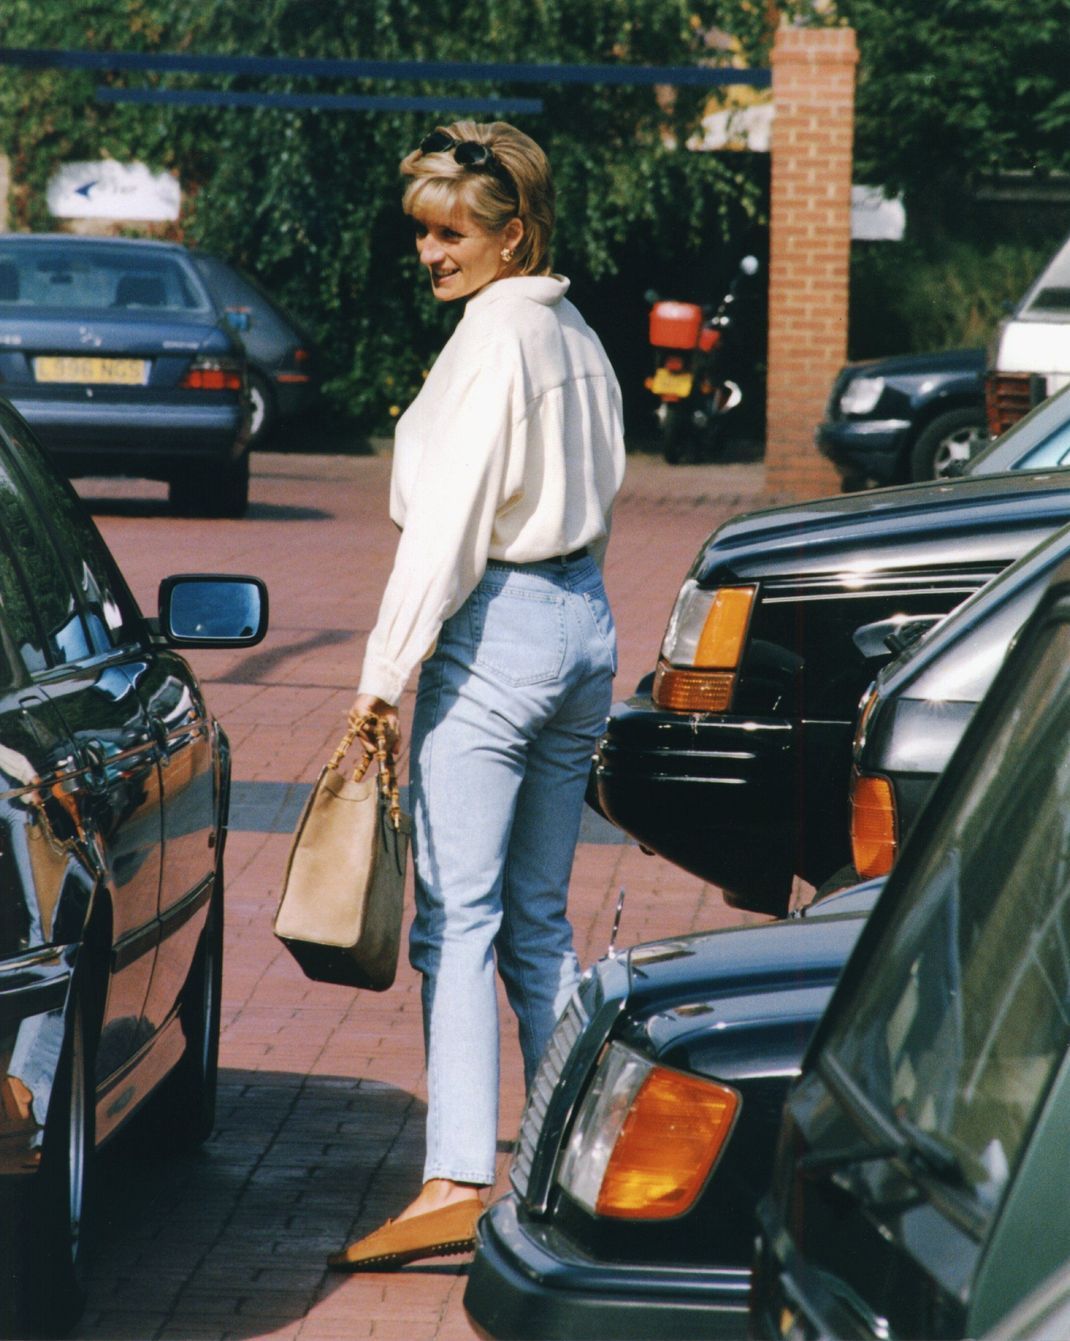 1996 wurde Lady Diana auf dem Parkplatz ihres Fitnessstudios mit ihrer heißgeliebten Gucci-Tote-Bag gesichtet, die später nach ihr benannt wurde.